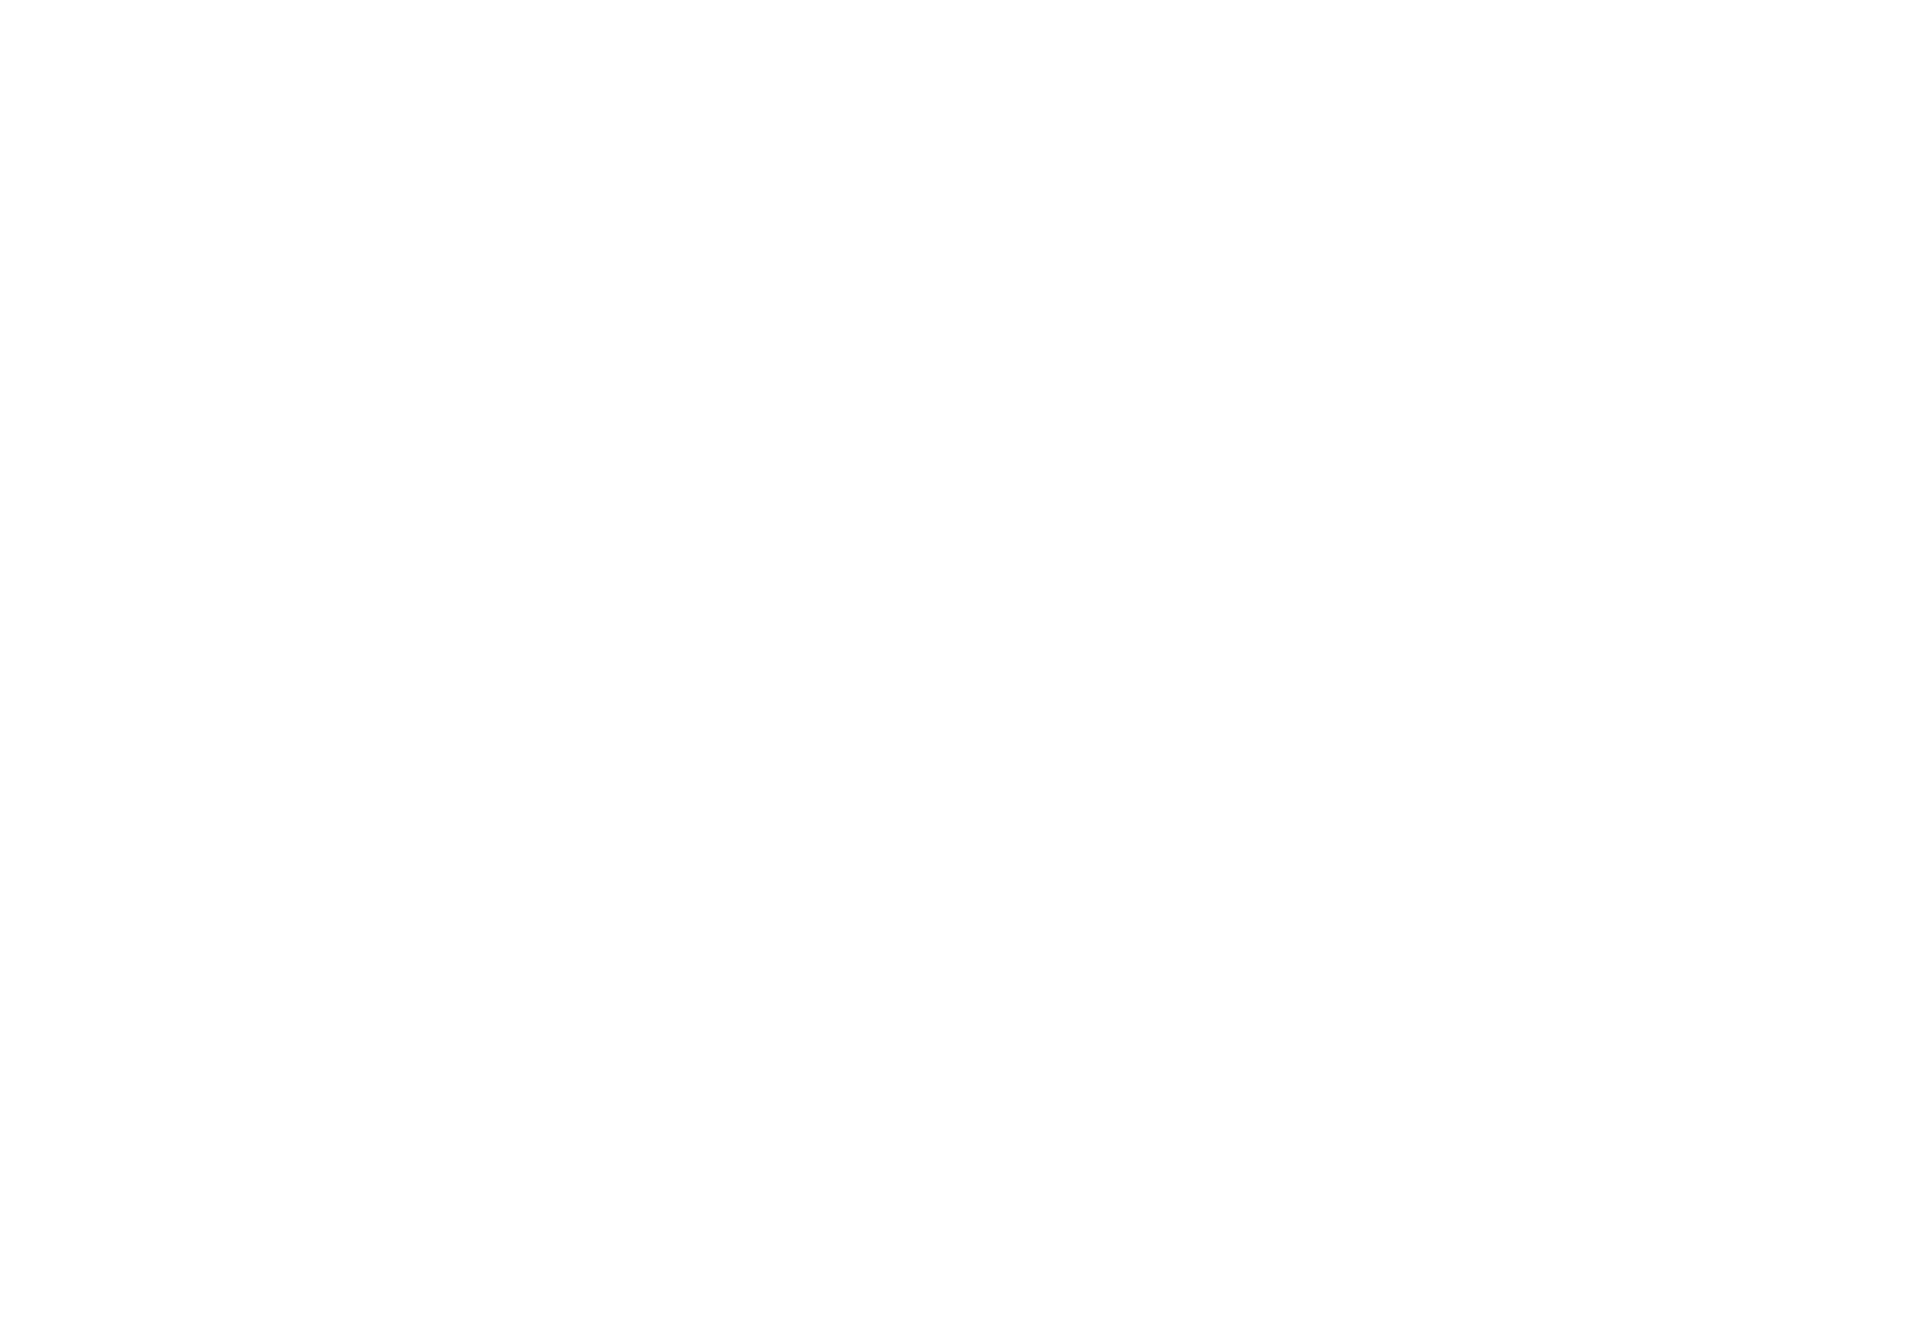 MarryinLove Weddingsdesign